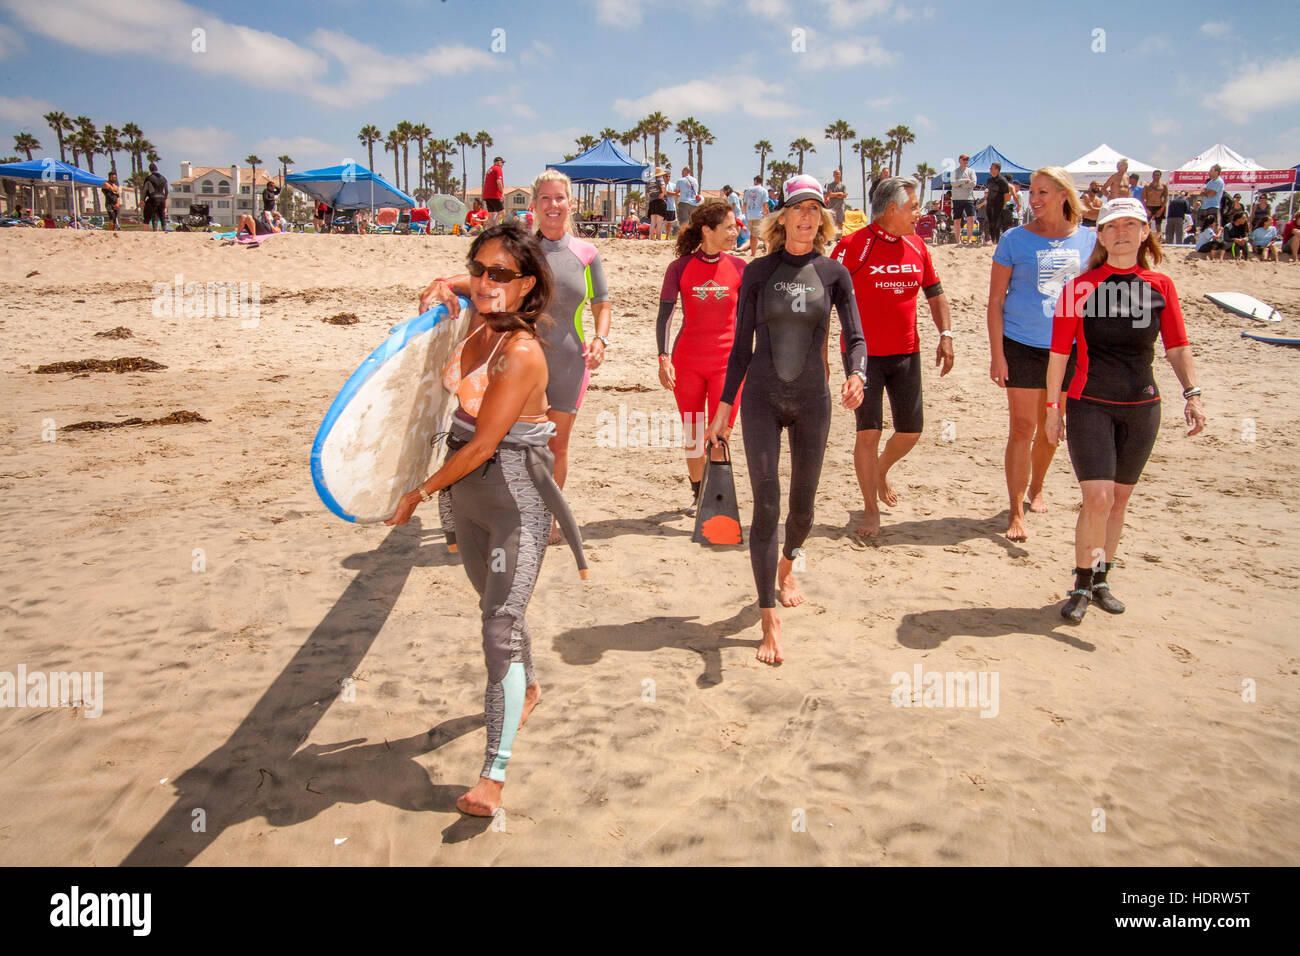 En agradecimiento por su servicio militar, un veterano (centro derecha) recibe una lección de surf libre de una instructora mientras caminan hacia el Océano Pacífico en Huntington Beach, California. Foto de stock